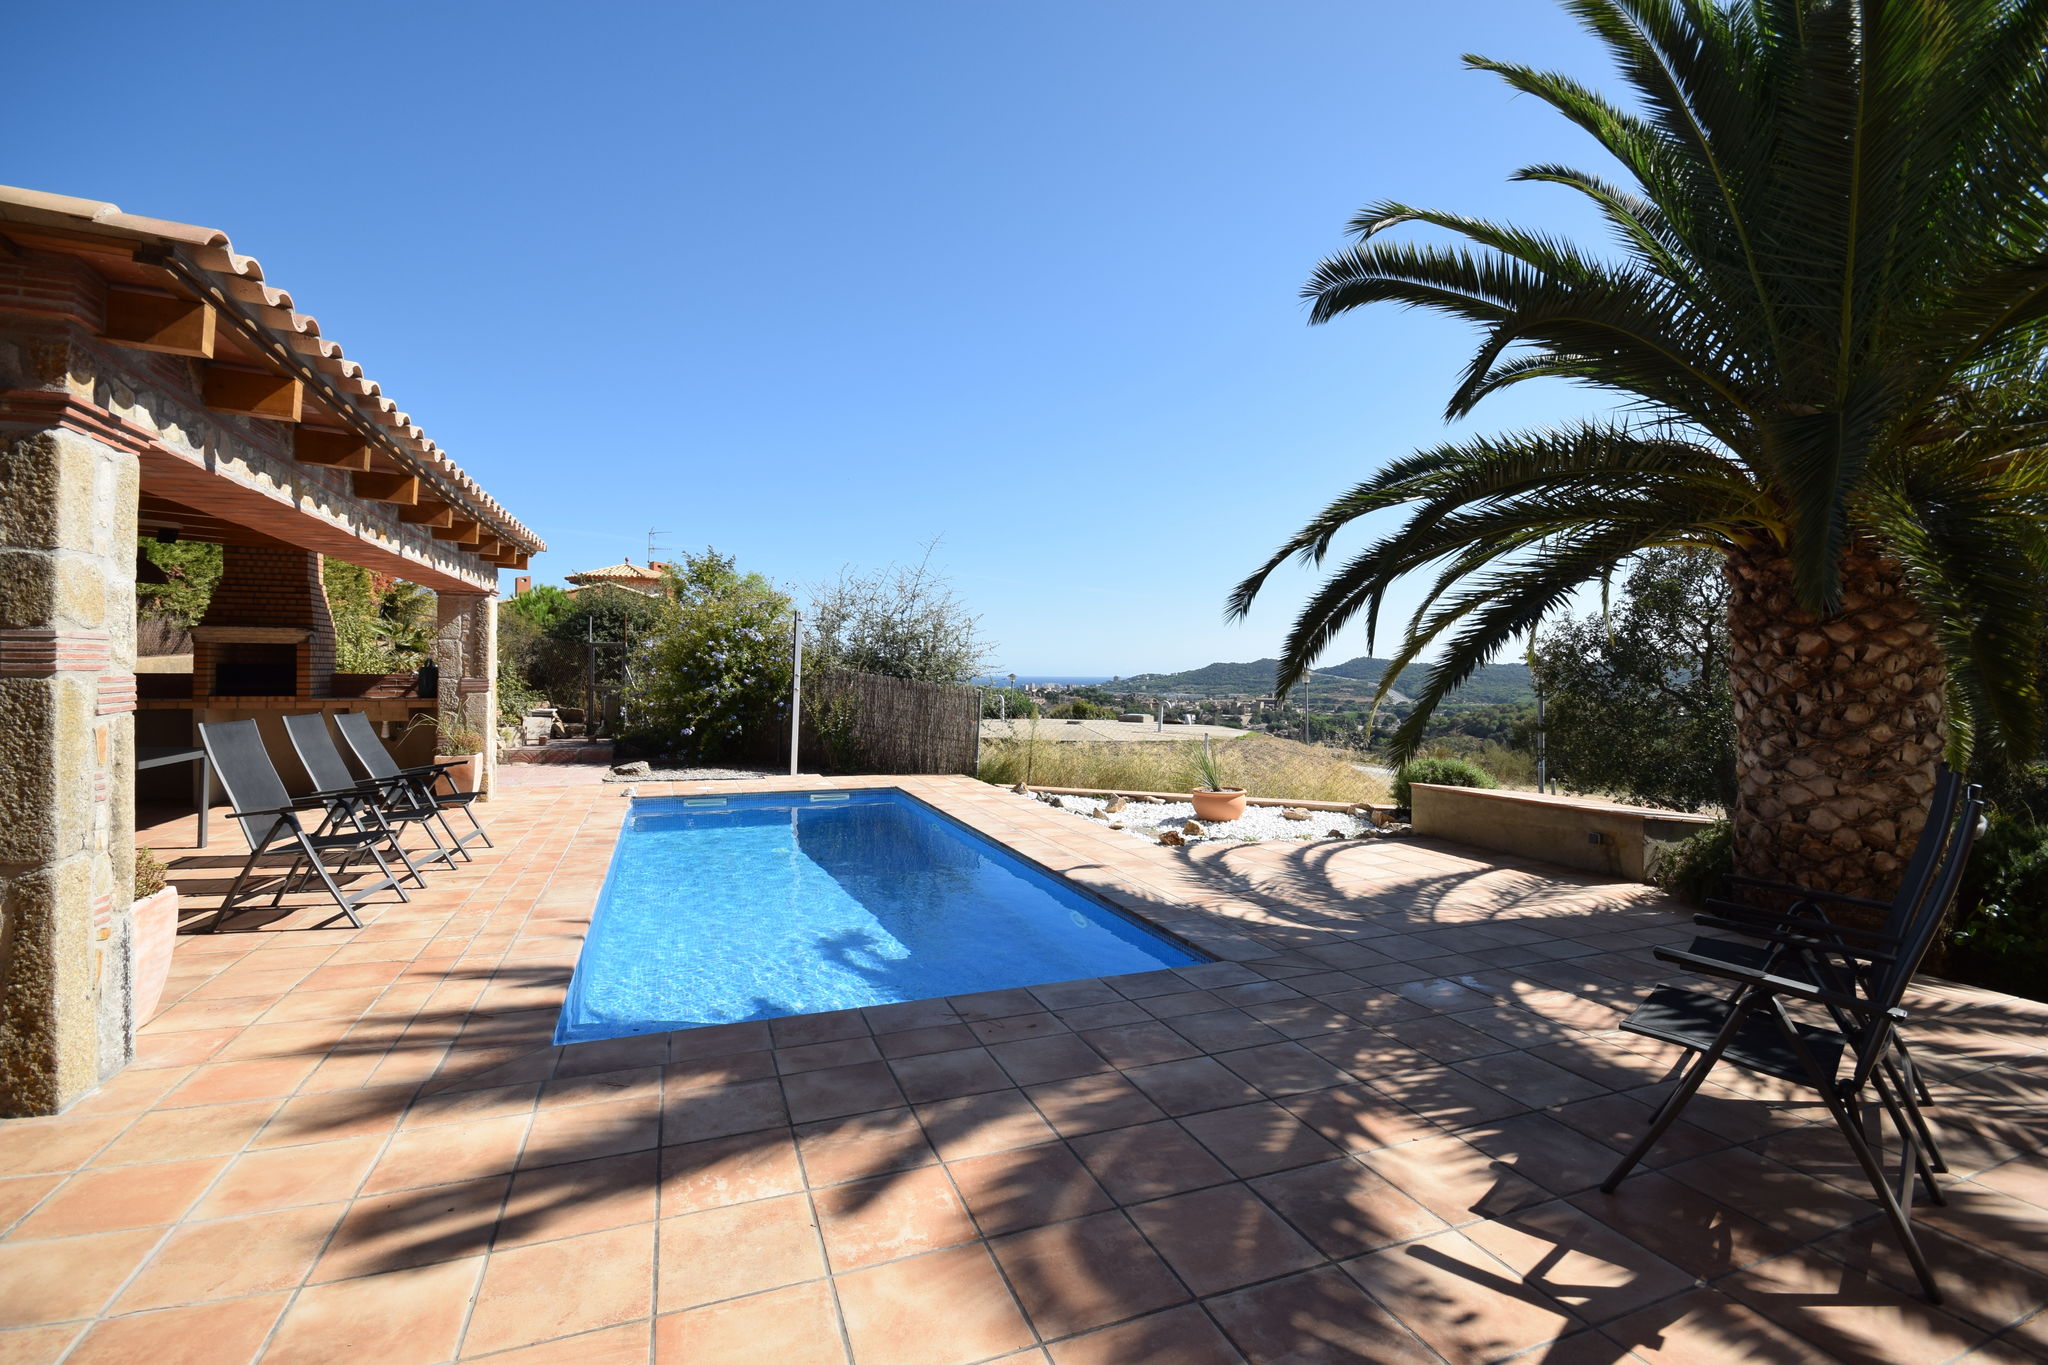 Vrijstaande villa in Catalonië met privézwembad